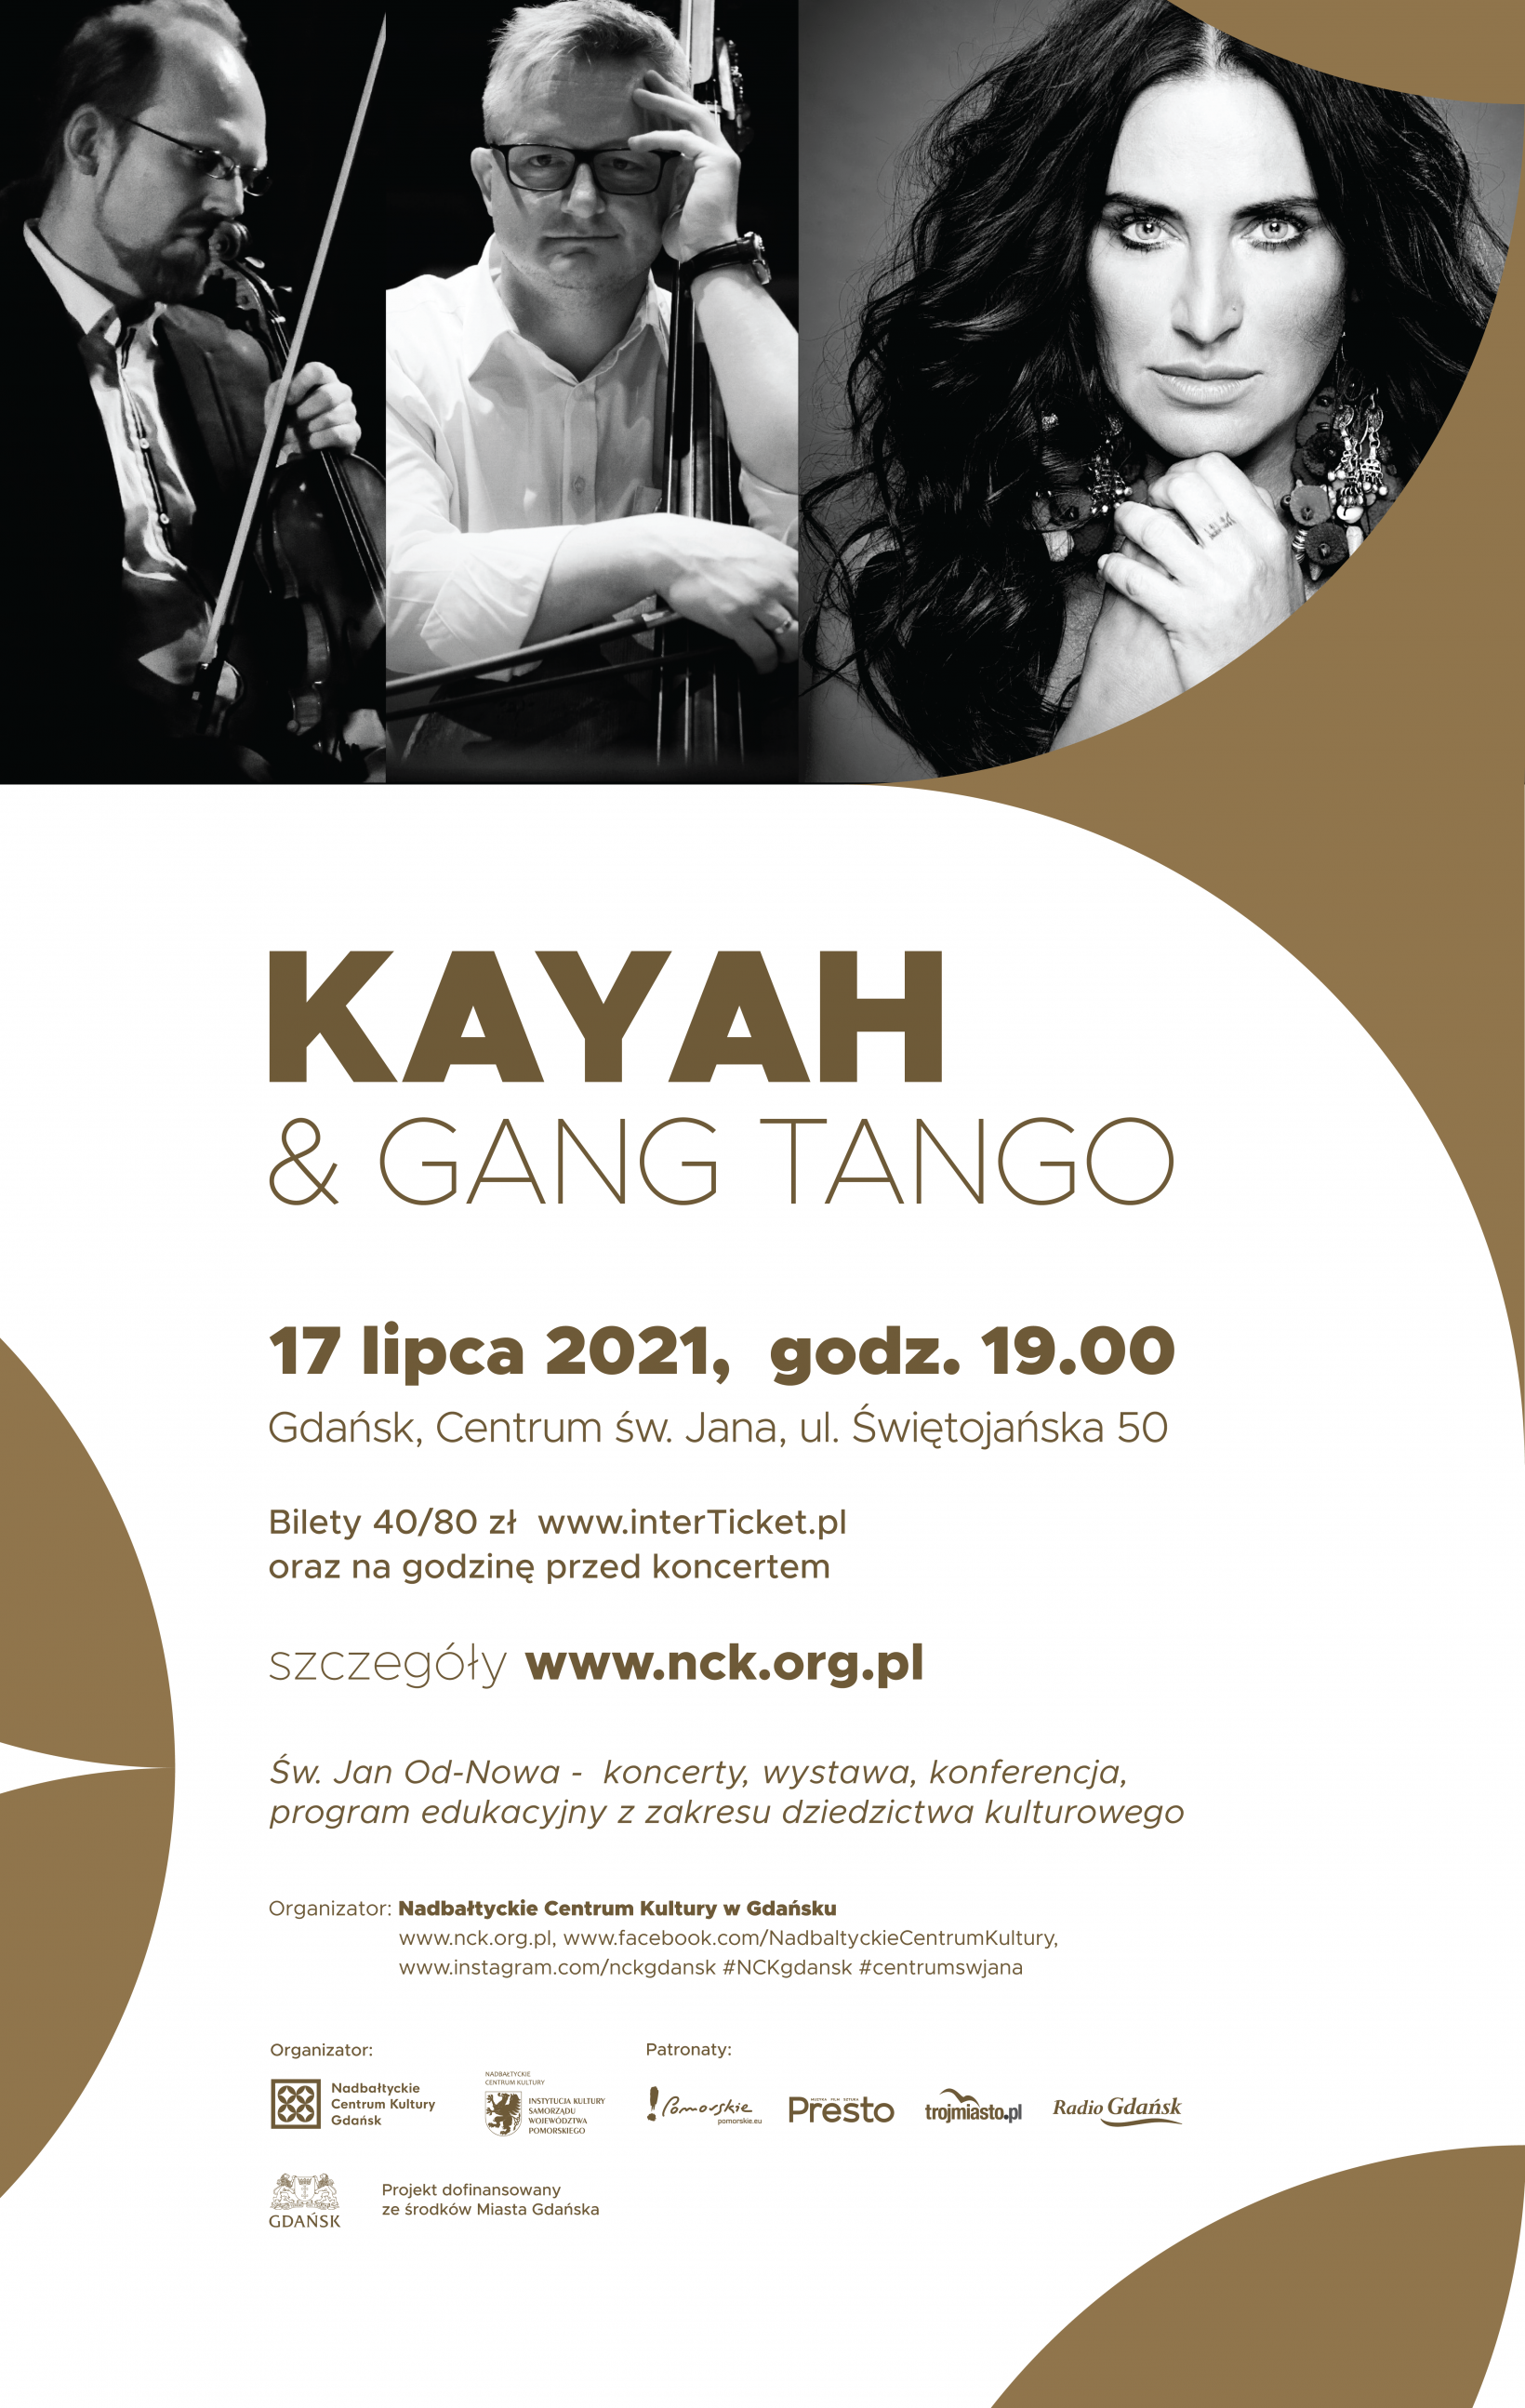 plakat promujący koncert Kayah & Gang Tango dane oraz zdjęcie arystów